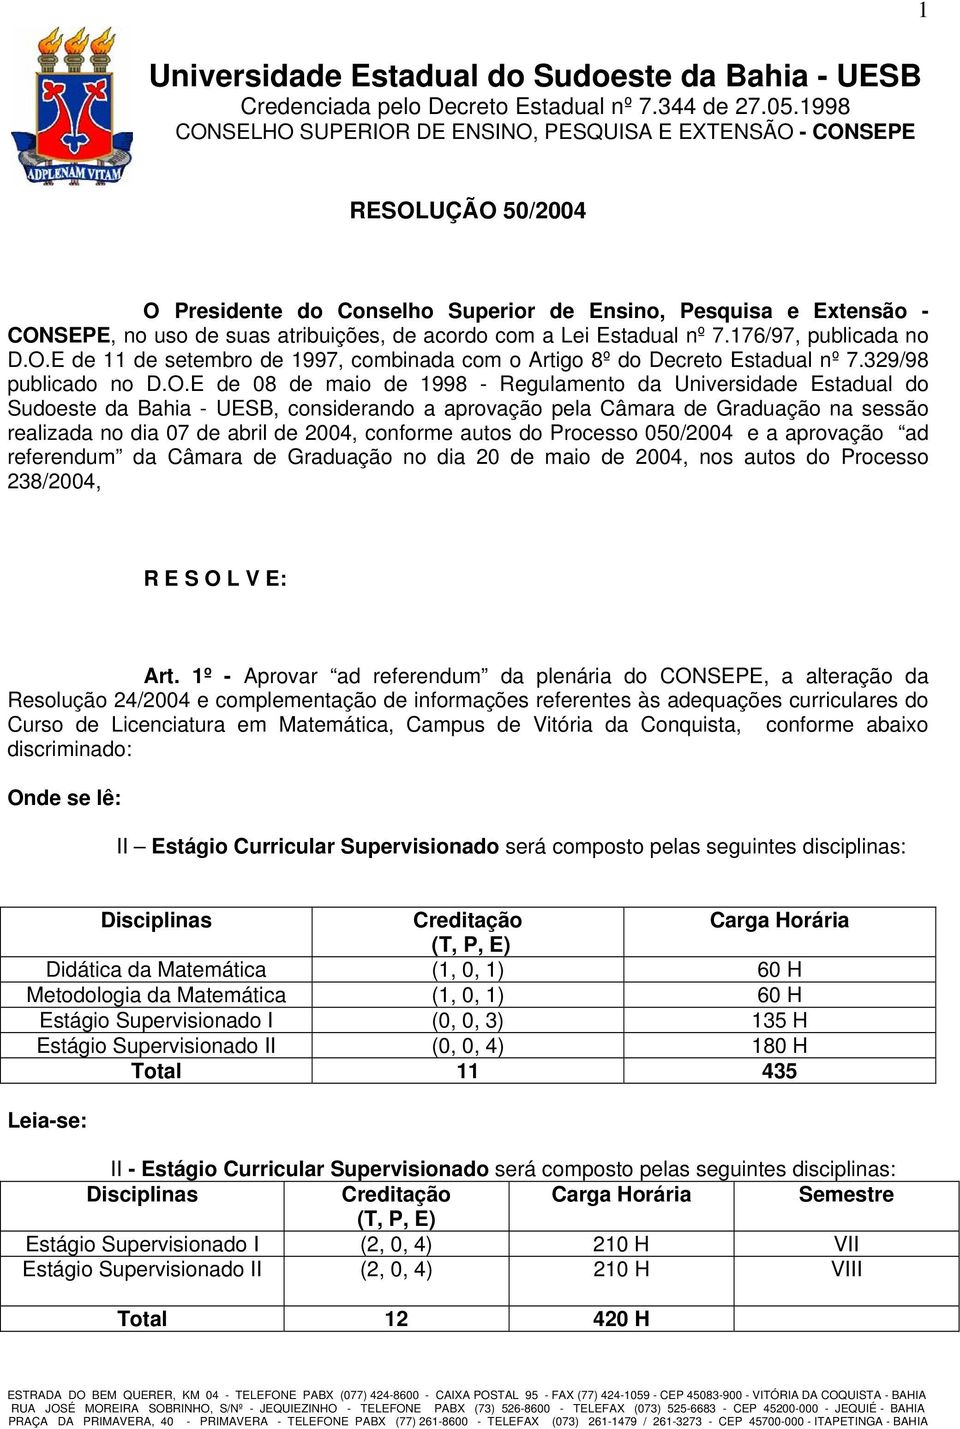 E de 08 de maio de 1998 - Regulamento da Universidade Estadual do Sudoeste da Bahia - UESB, considerando a aprovação pela Câmara de Graduação na sessão realizada no dia 07 de abril de 2004, conforme